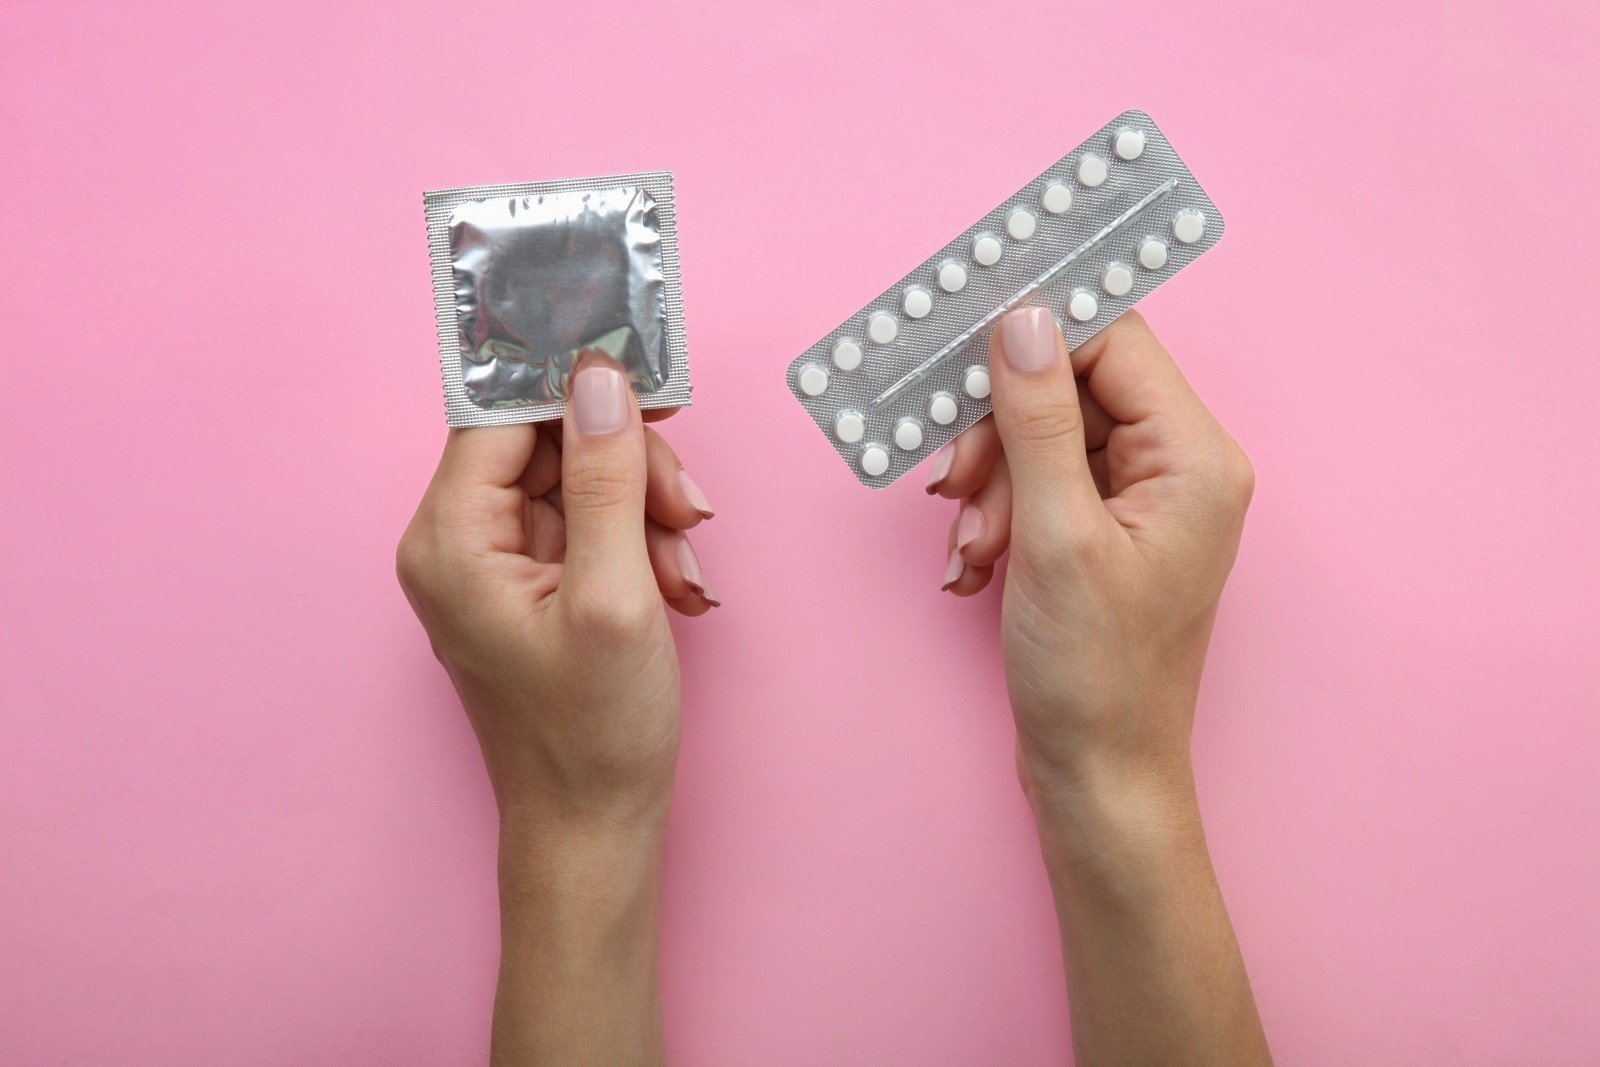 geriamieji kontraceptikai kurie padeda numesti svorį